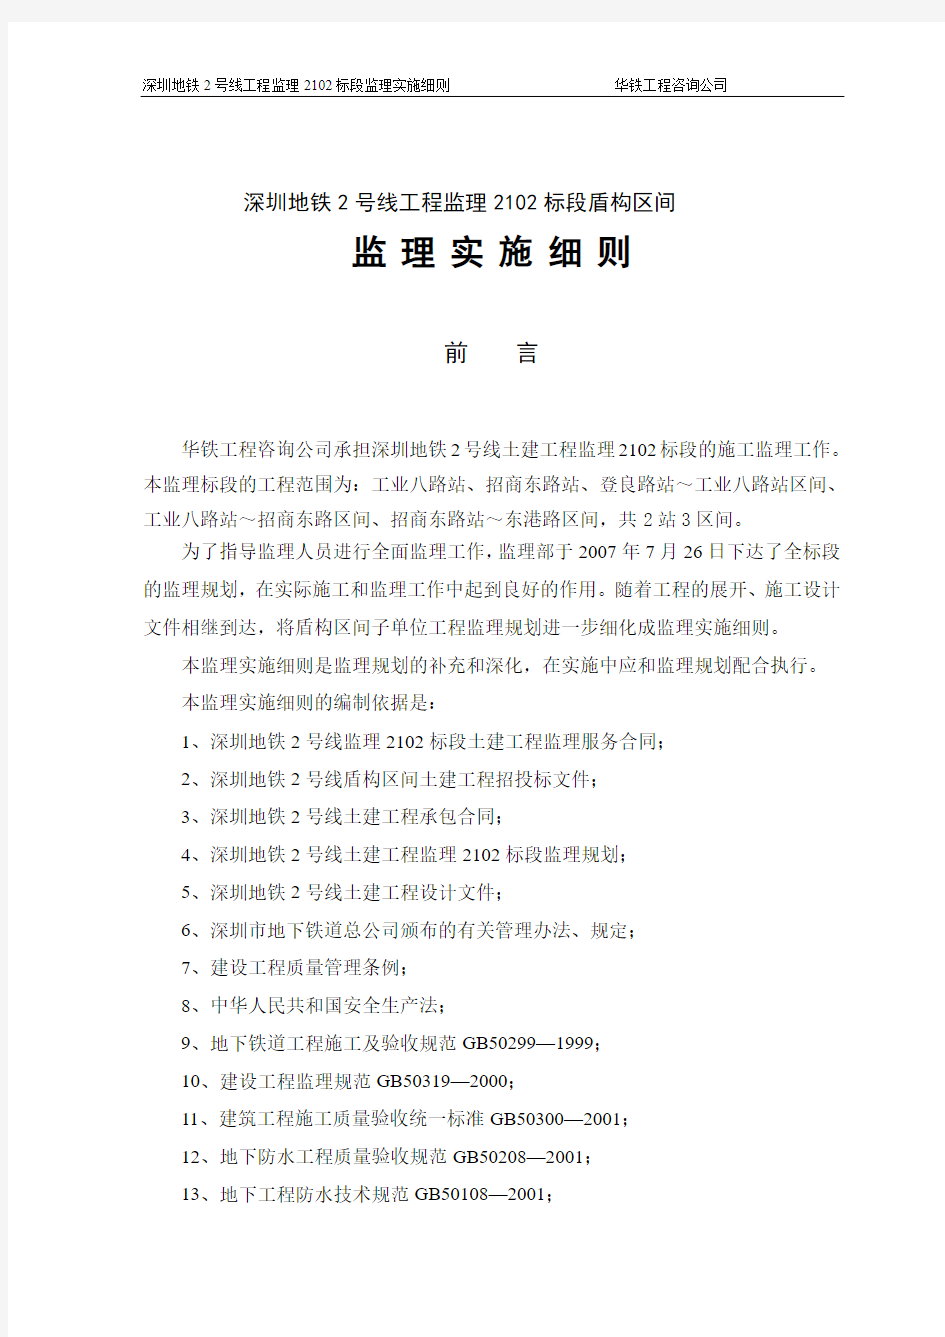 深圳地铁2号线2102盾构监理实施细则(以此为标准)